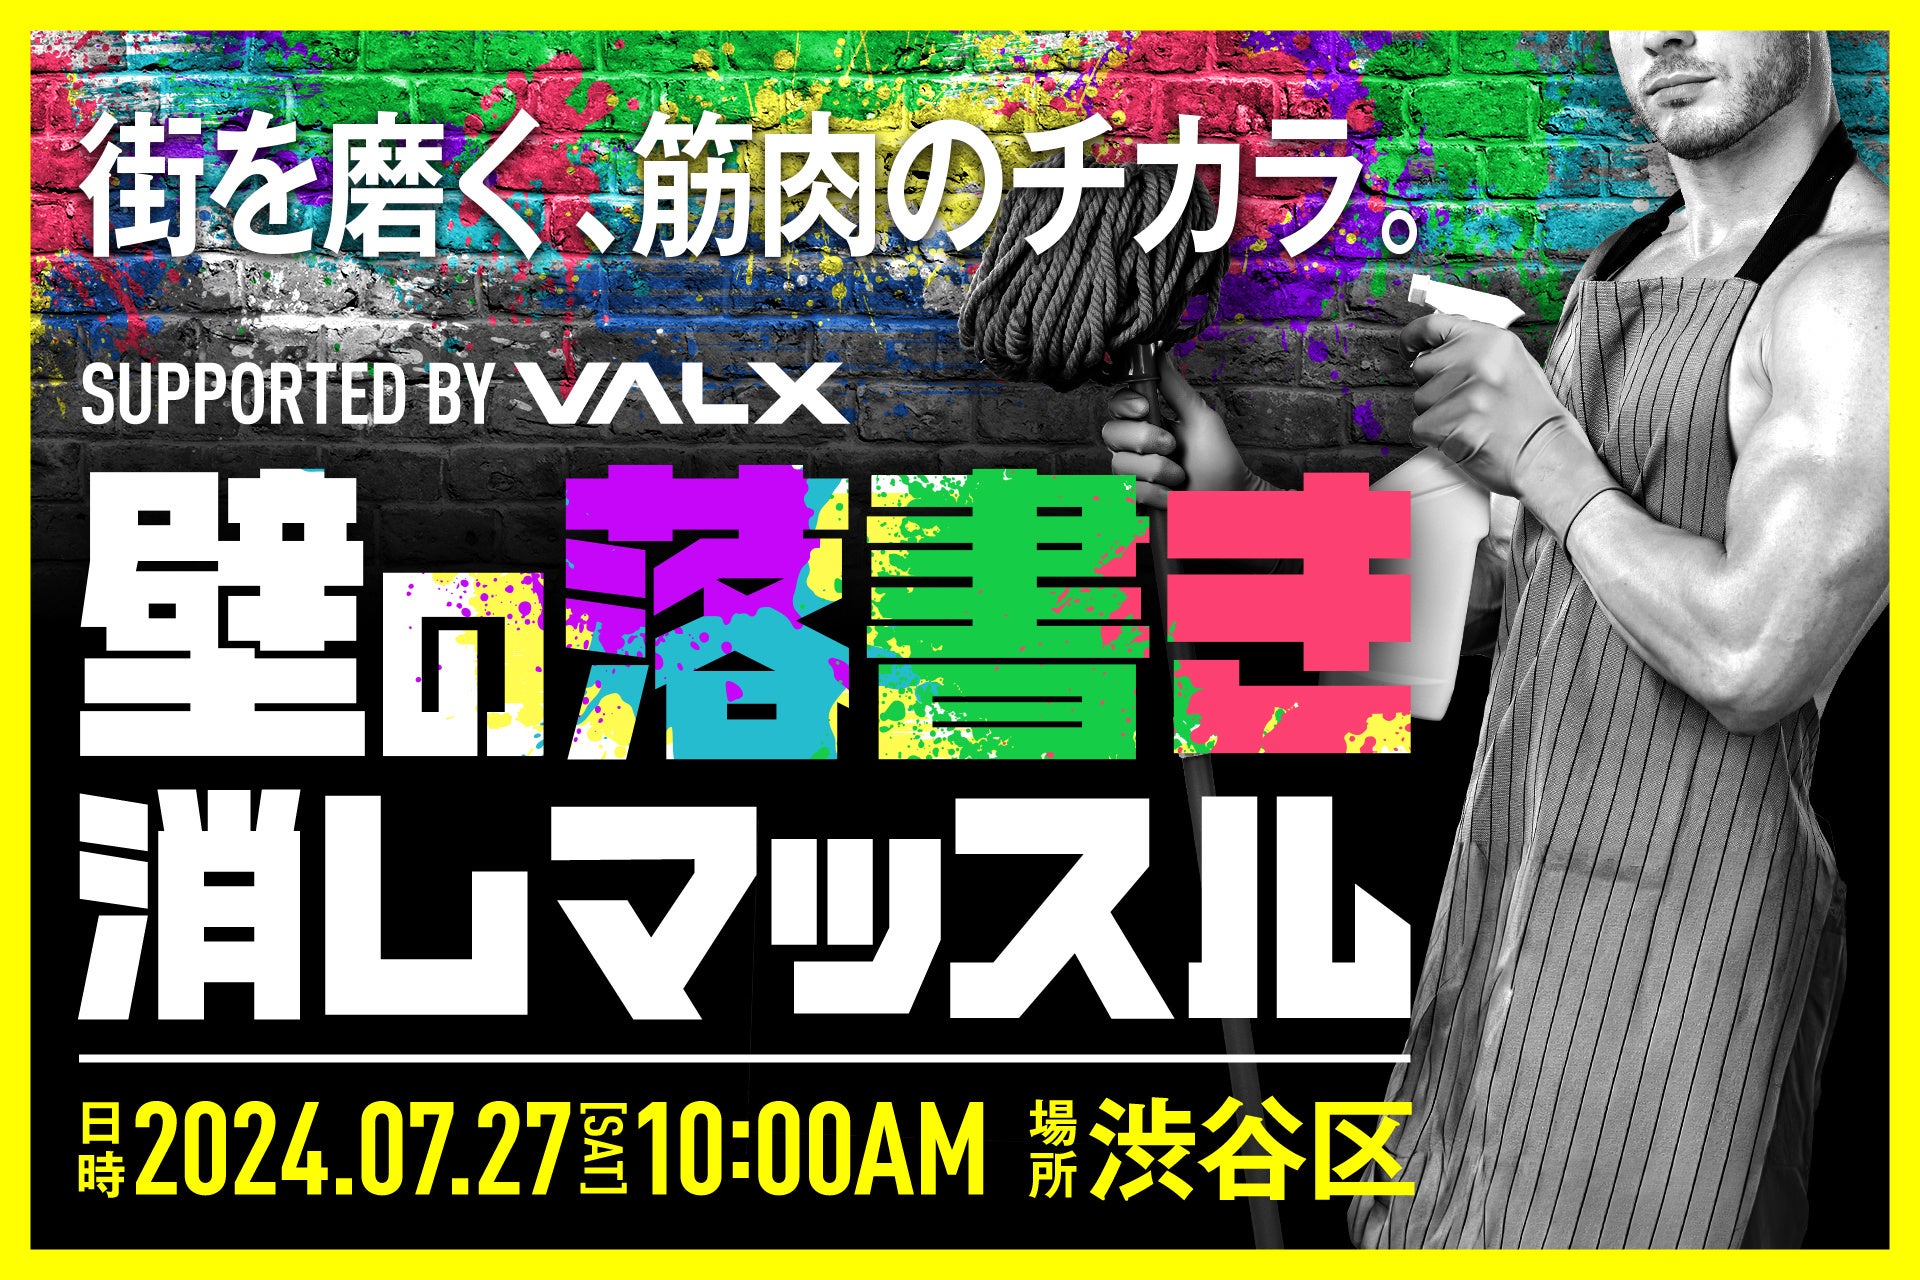 「求ム 社会貢献マッチョ」鍛え上げられたその筋肉、街を守るために使いませんか VALXが渋谷区と連携した清掃イベント「壁の落書き消しマッスル」を開催